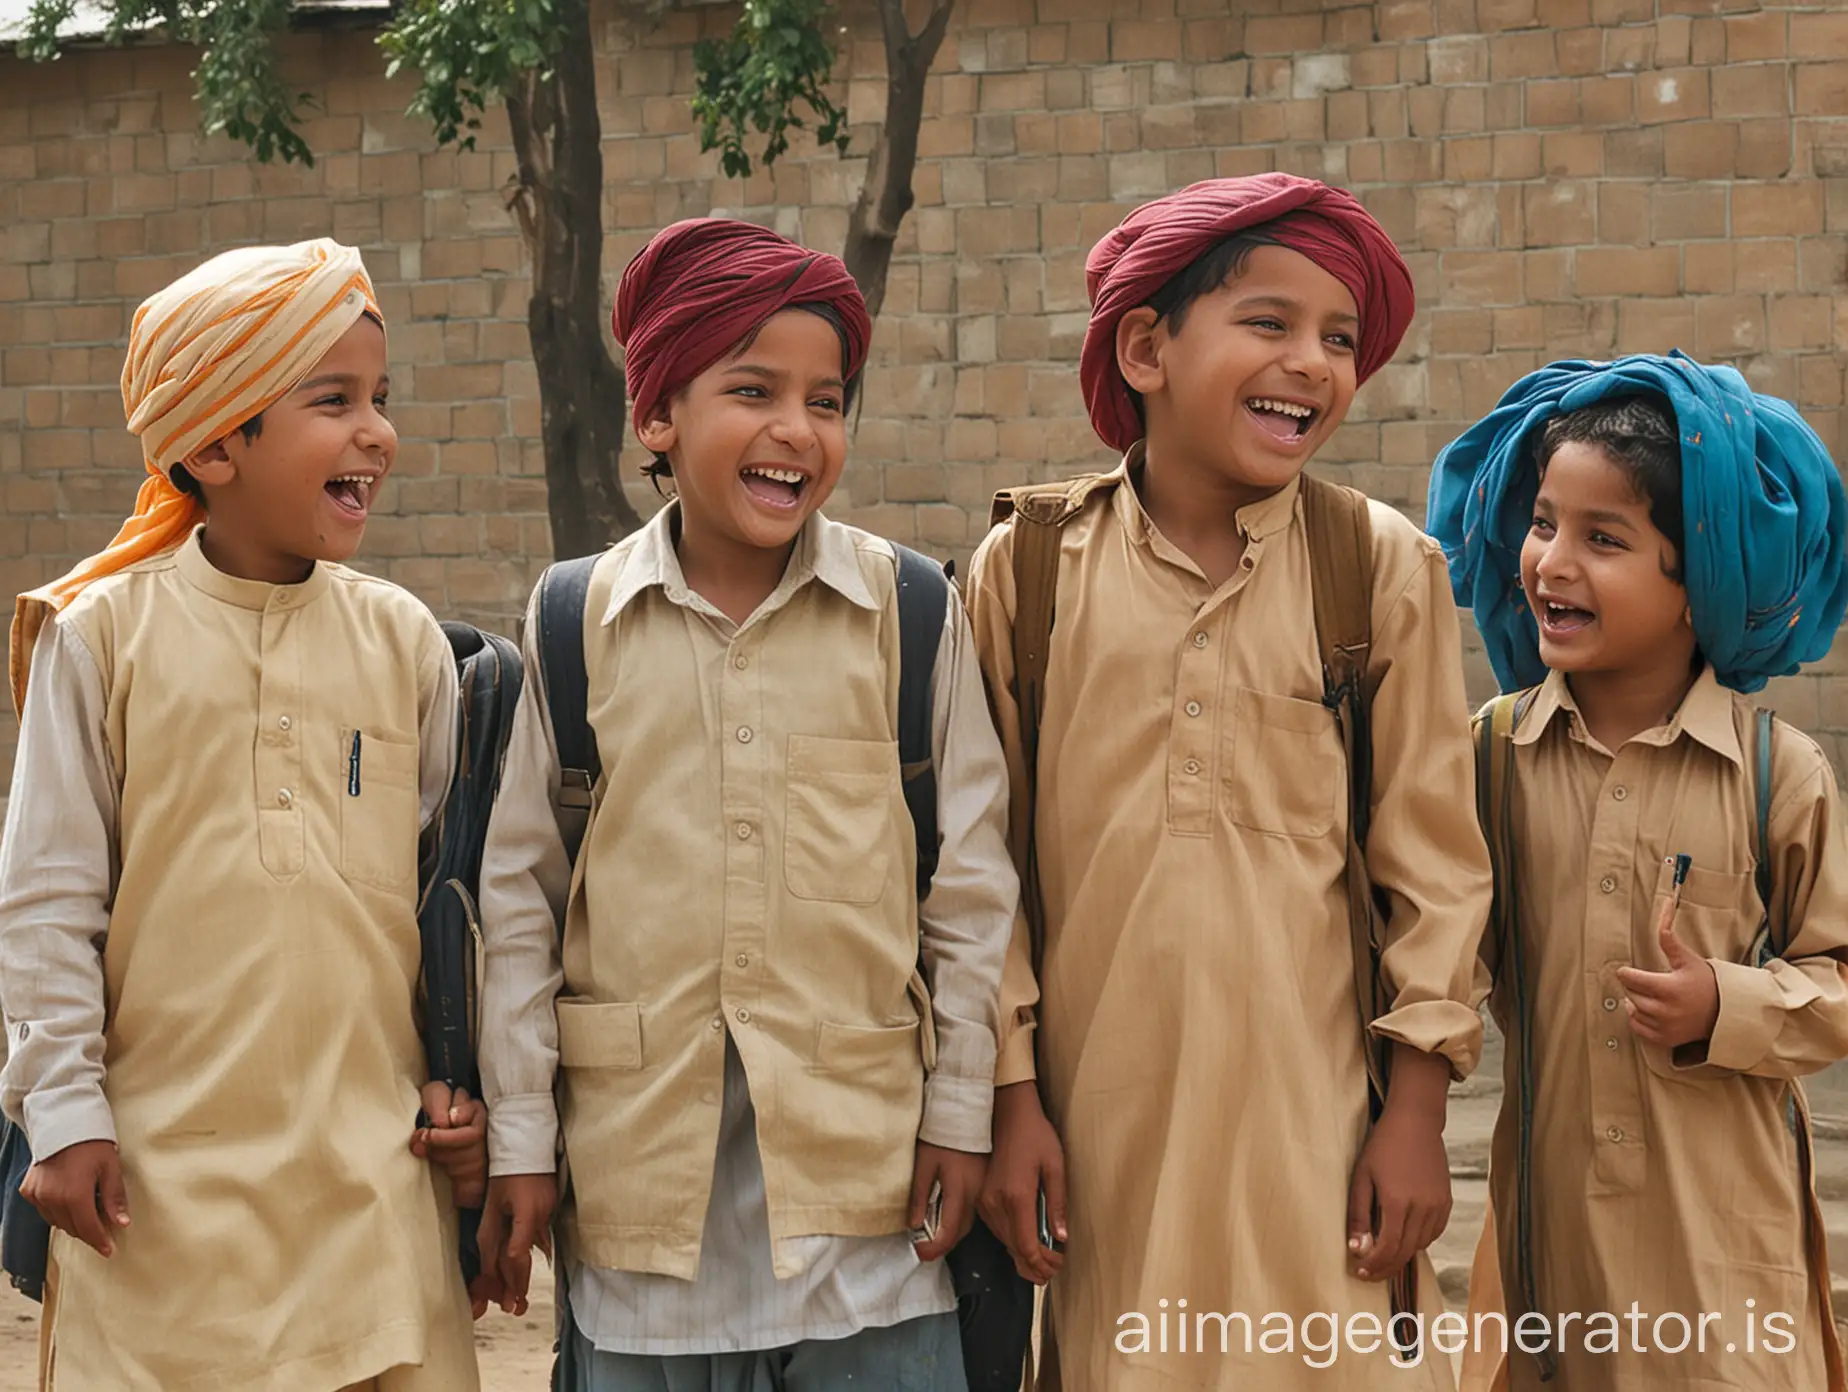 Punjabi children going to Punjabi school in Punjab, laughing and chatting